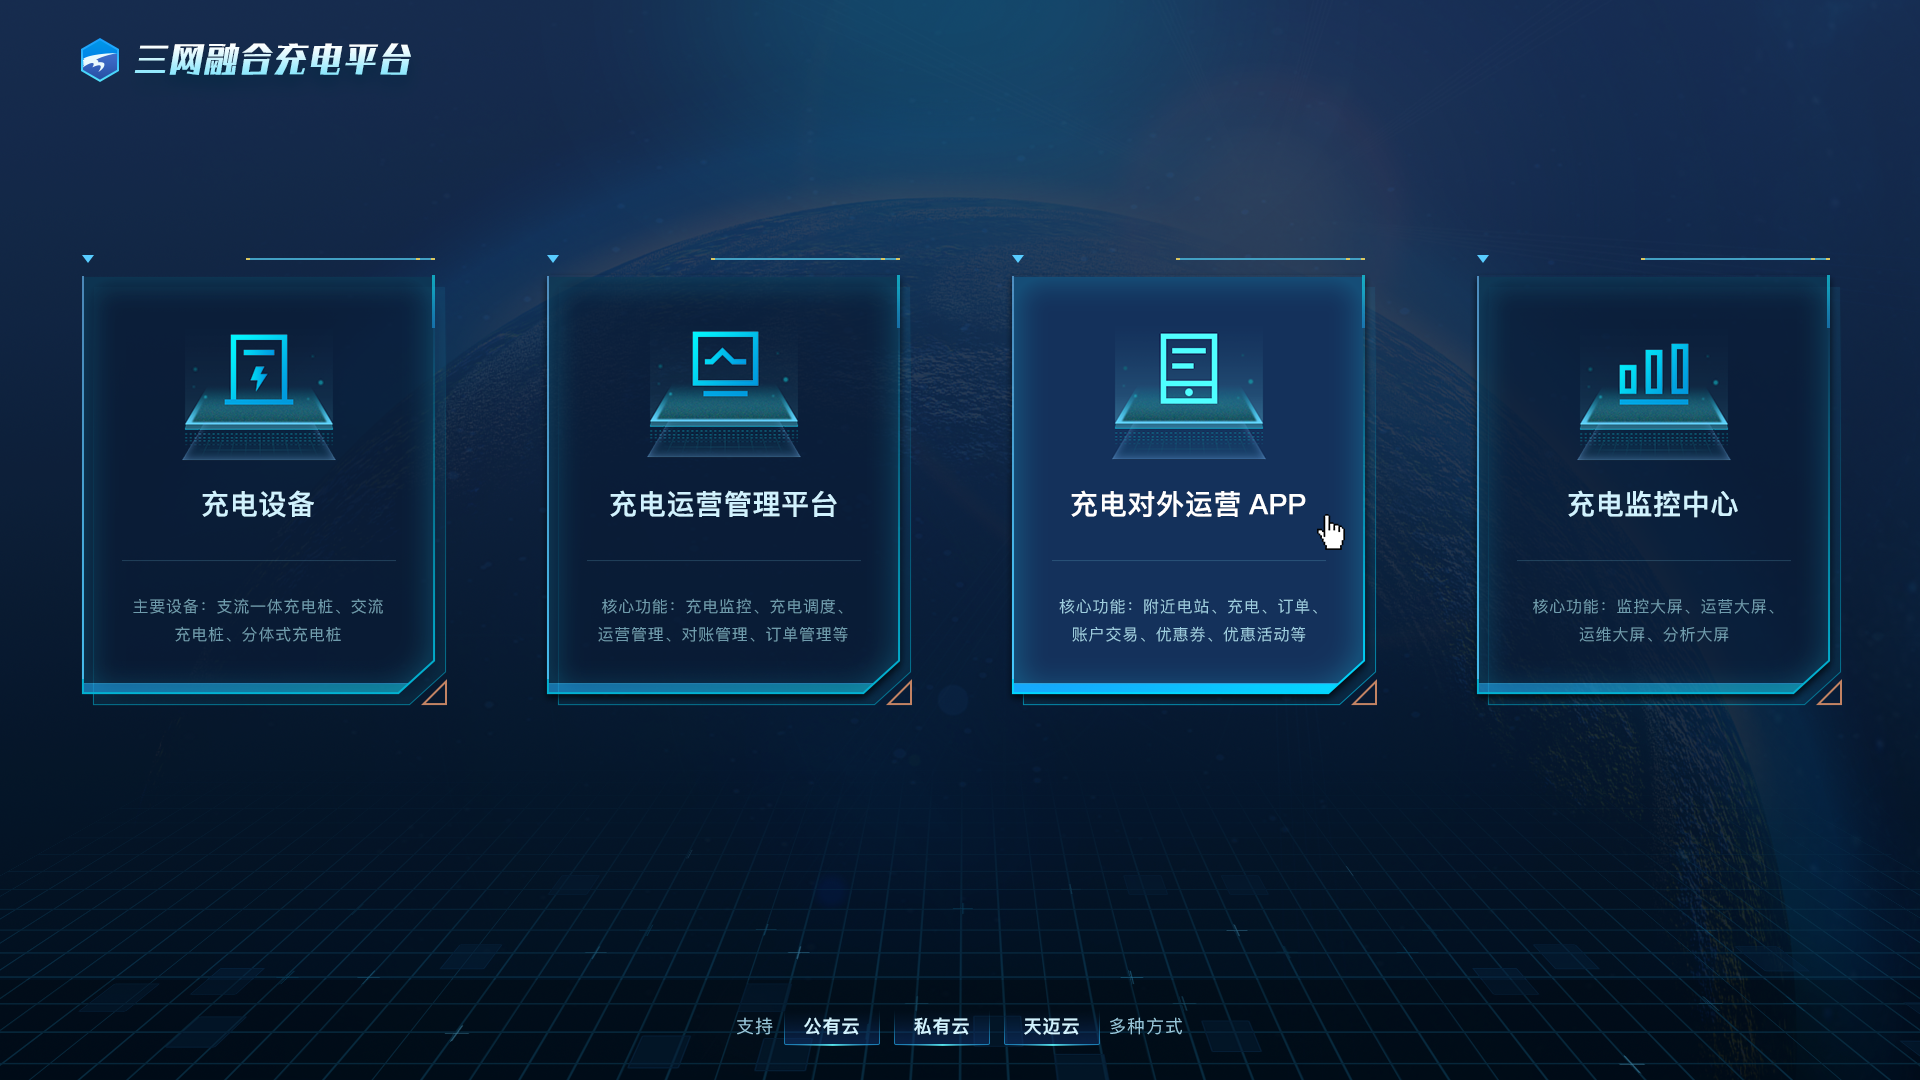 沐鸣官方网站荣获第四届中国工业互联网大赛优秀奖